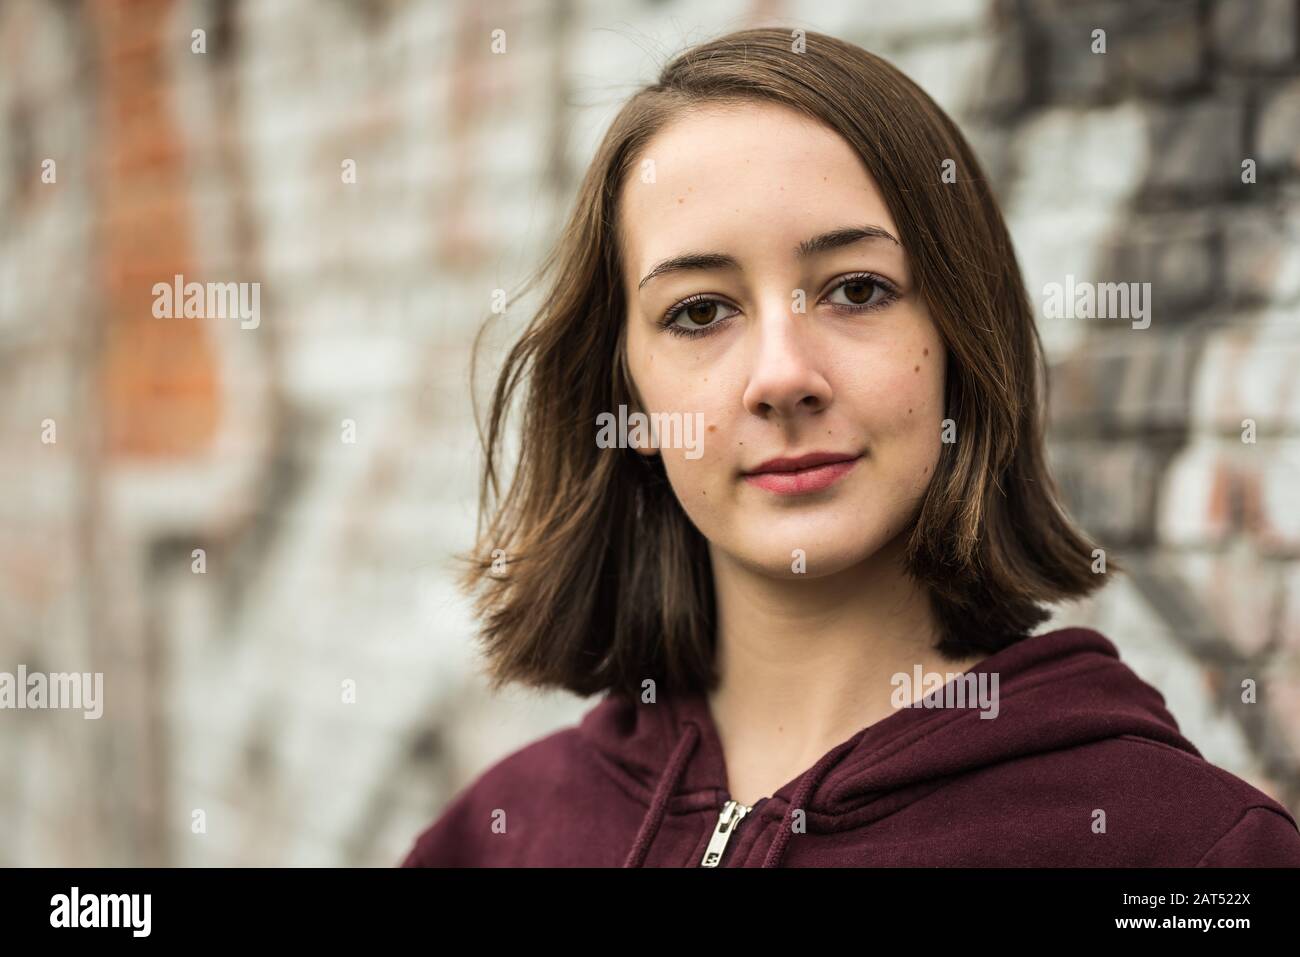 Kopfschuss eines 17 Jahre alten College-Mädchens mit einem Hoodie, das gegen eine raue Wand posiert Stockfoto